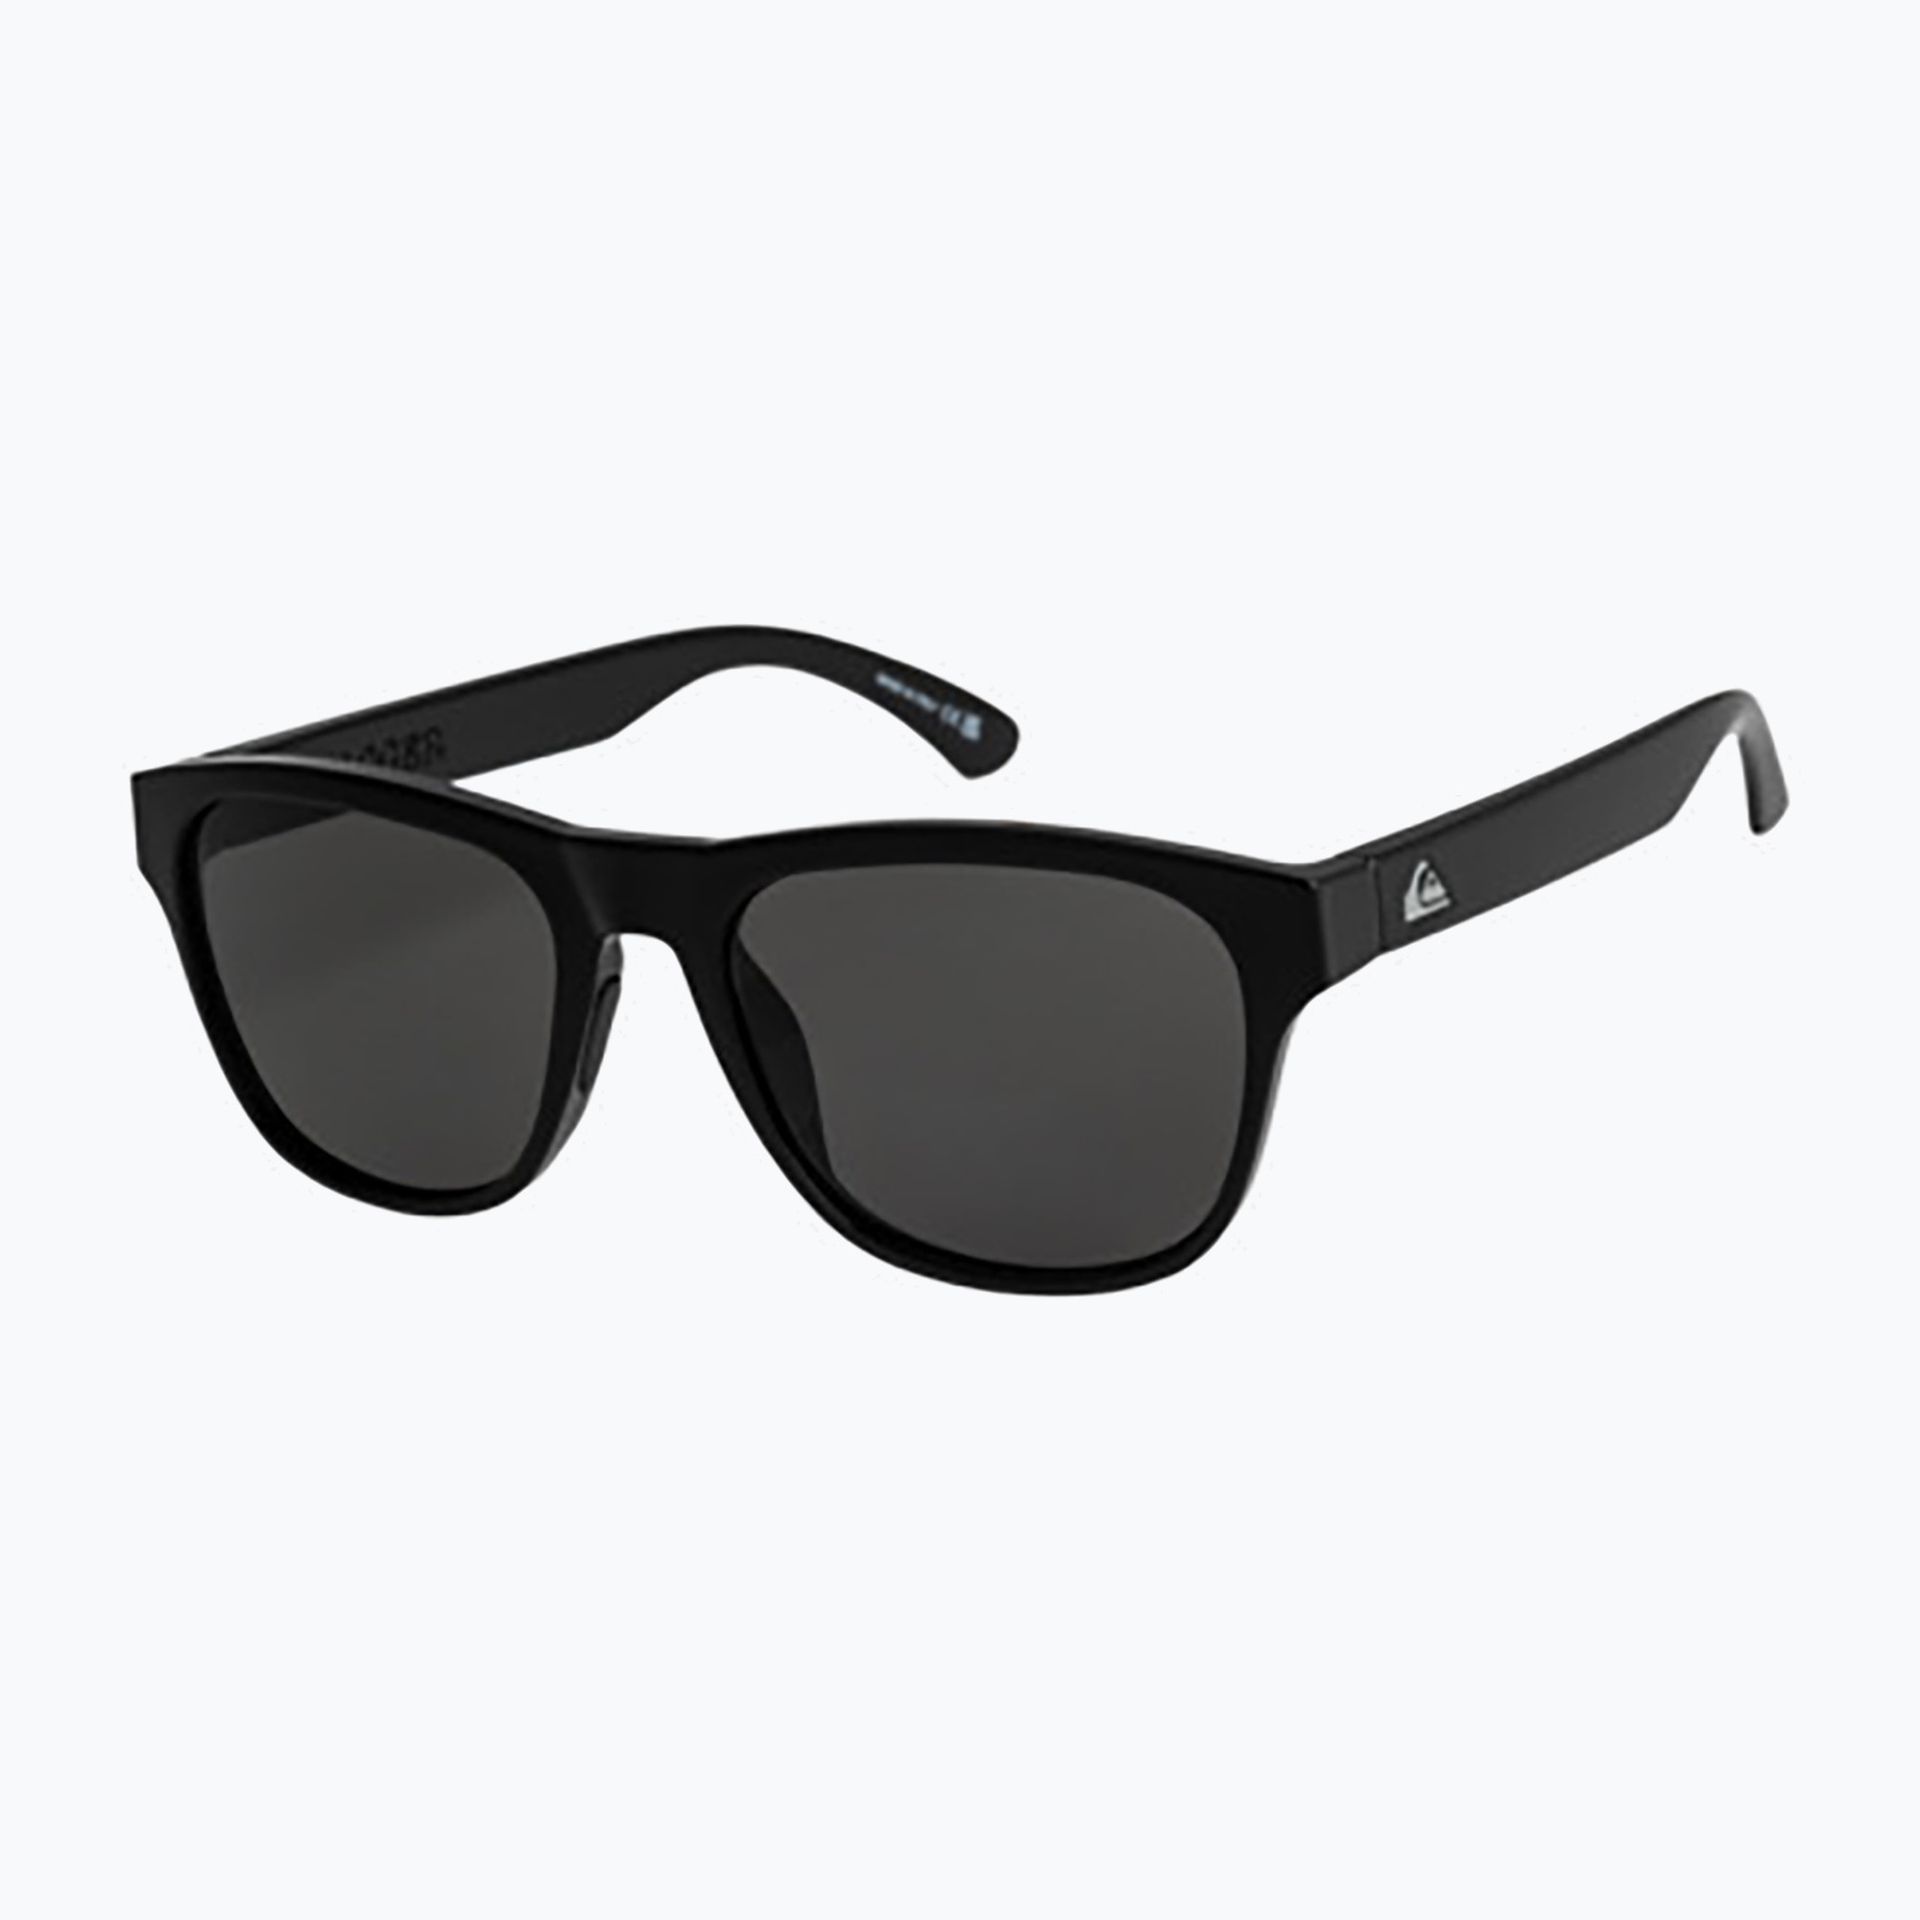 Okulary przeciwsłoneczne męskie Quiksilver Tagger black/grey | WYSYŁKA W 24H | 30 DNI NA ZWROT